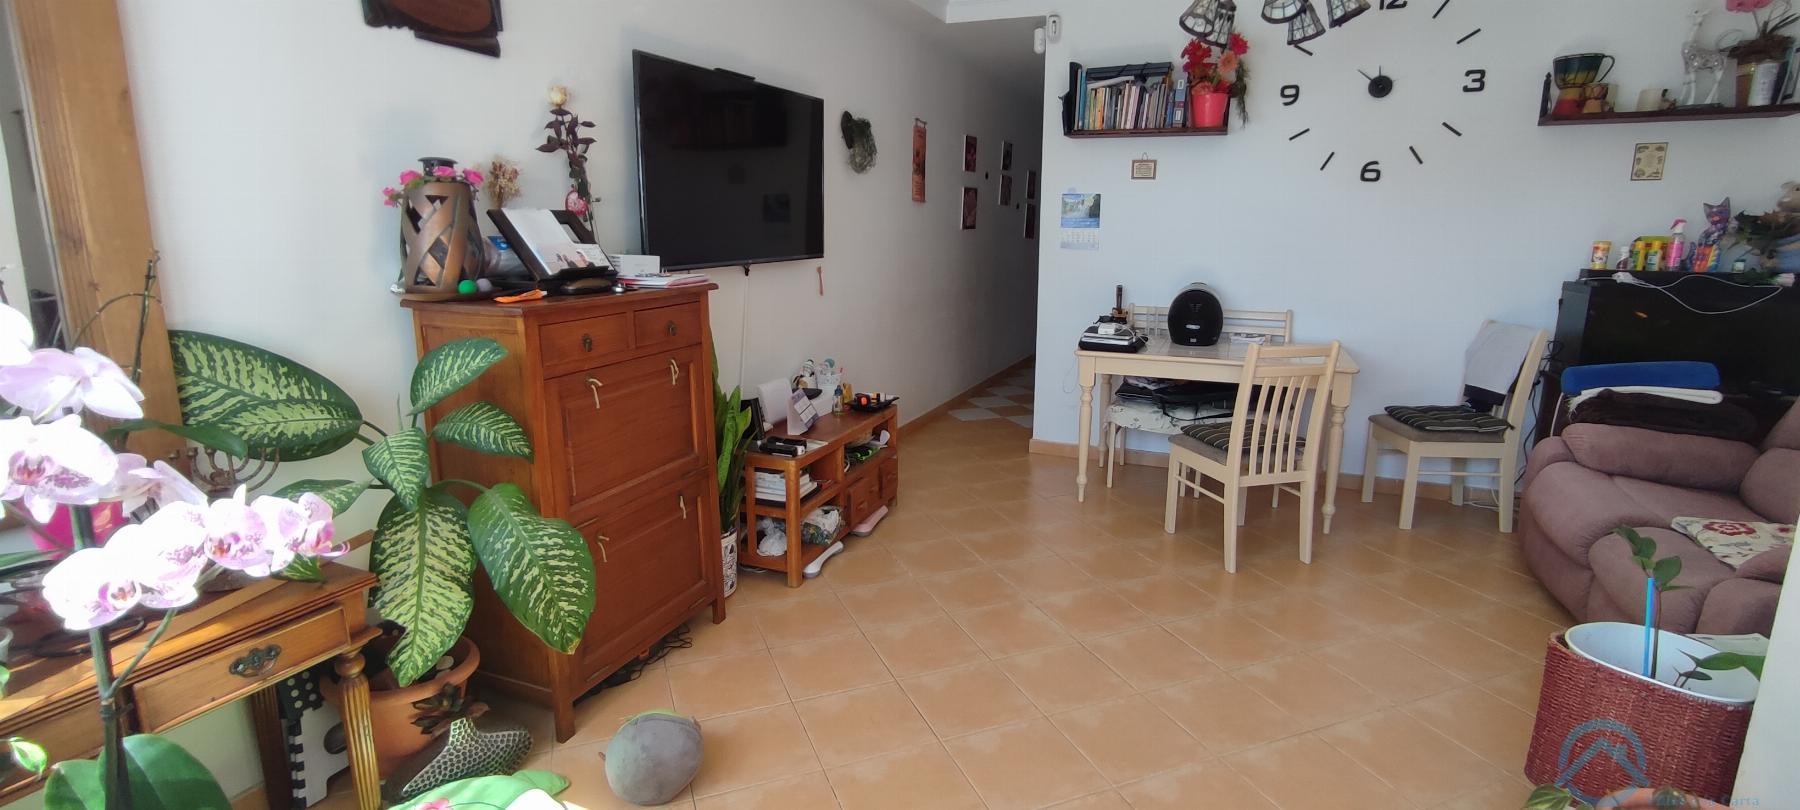 Salg av leilighet i Arrecife